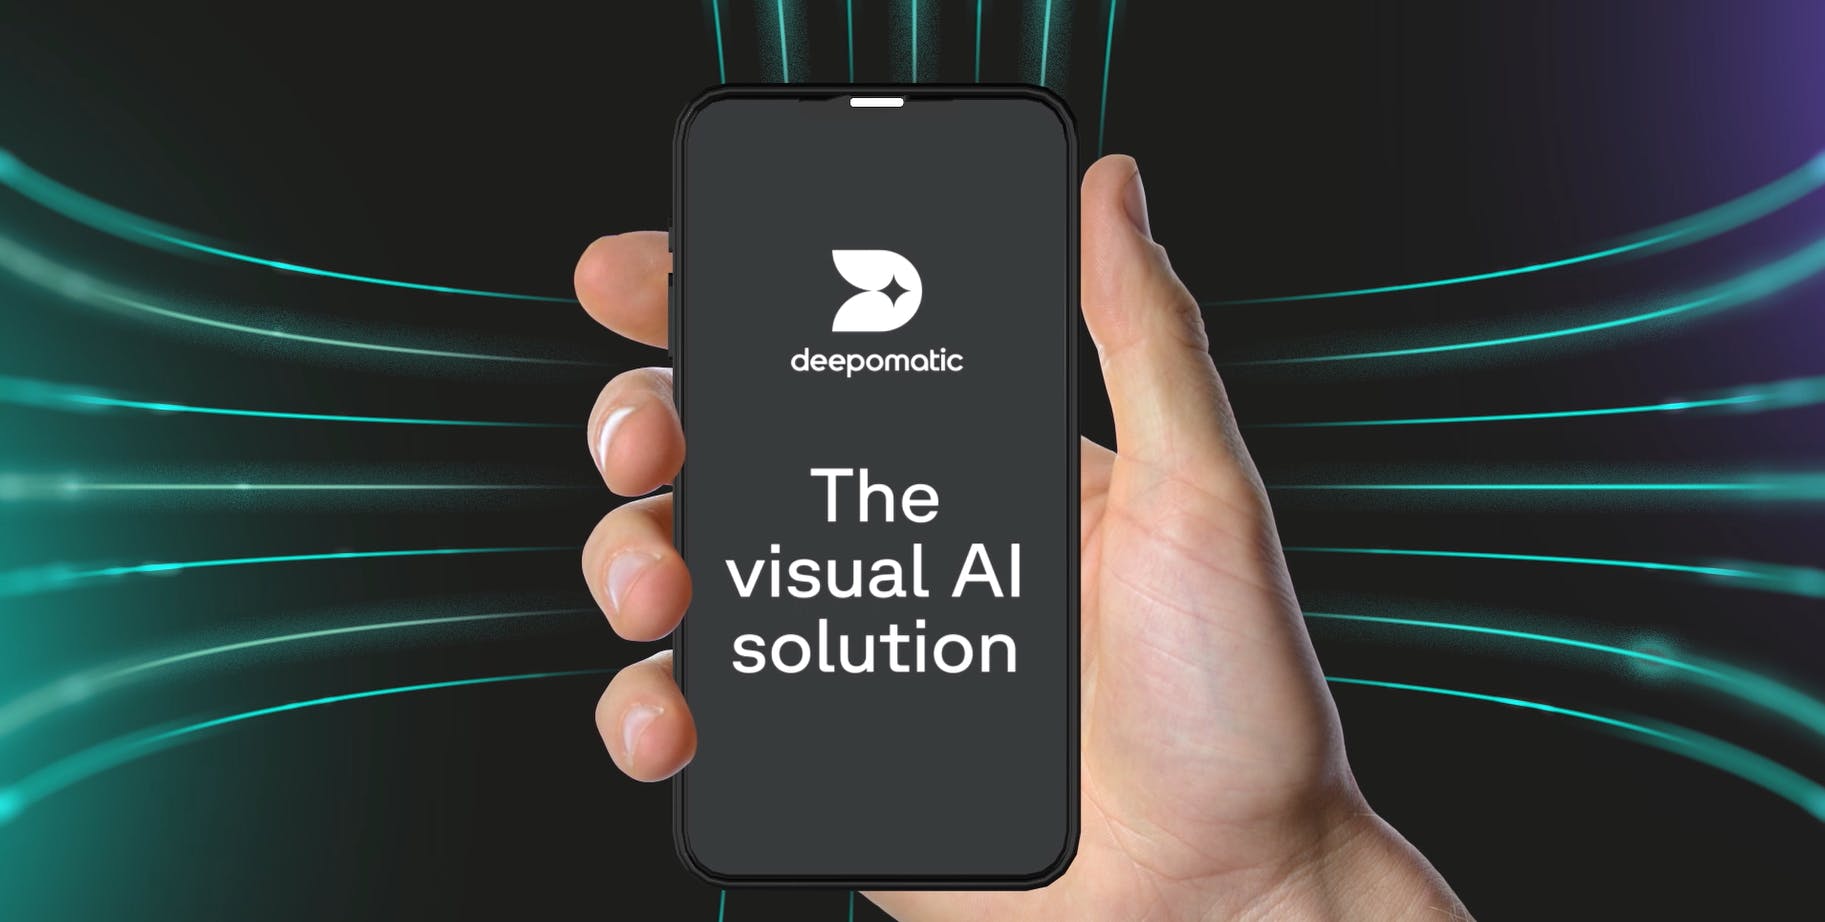 Couverture de la vidéo de Deepomatic sur la plateforme d'IA visuelle